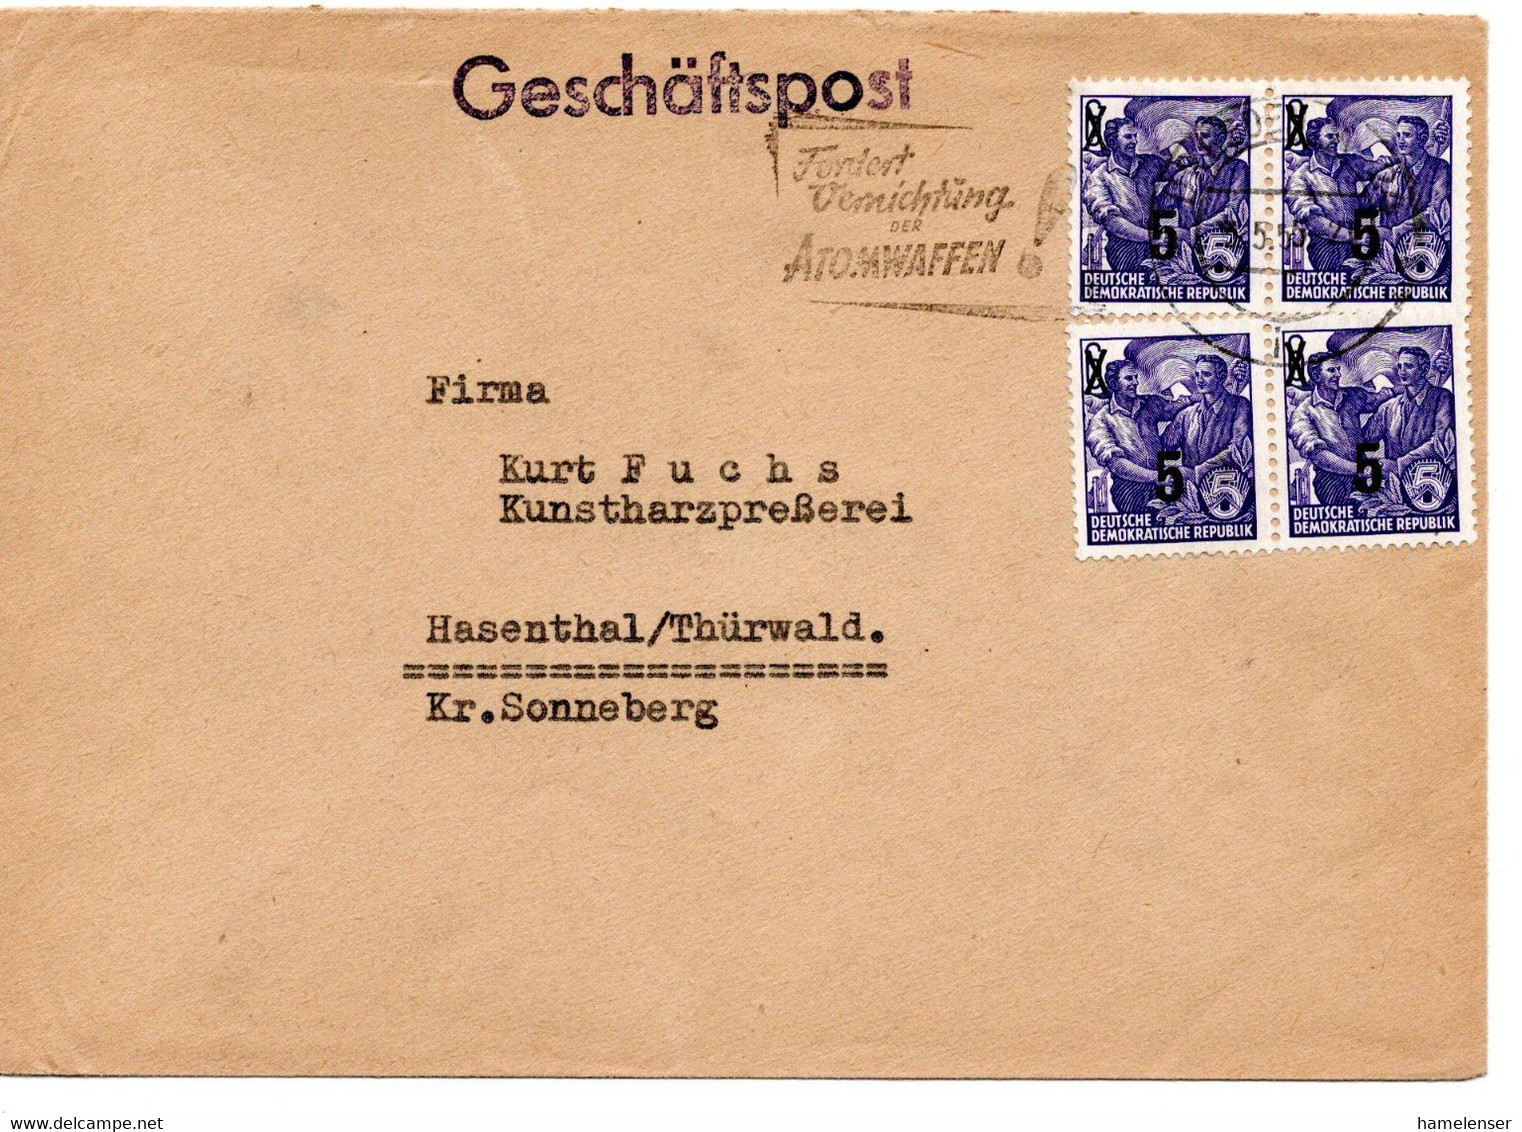 60653 - DDR - 1955 - 4@5Pfg Aufdruck A Bf DRESDEN - FORDERT VERNICHTUNG VON ATOMWAFFEN! -> Hasenthal - Covers & Documents